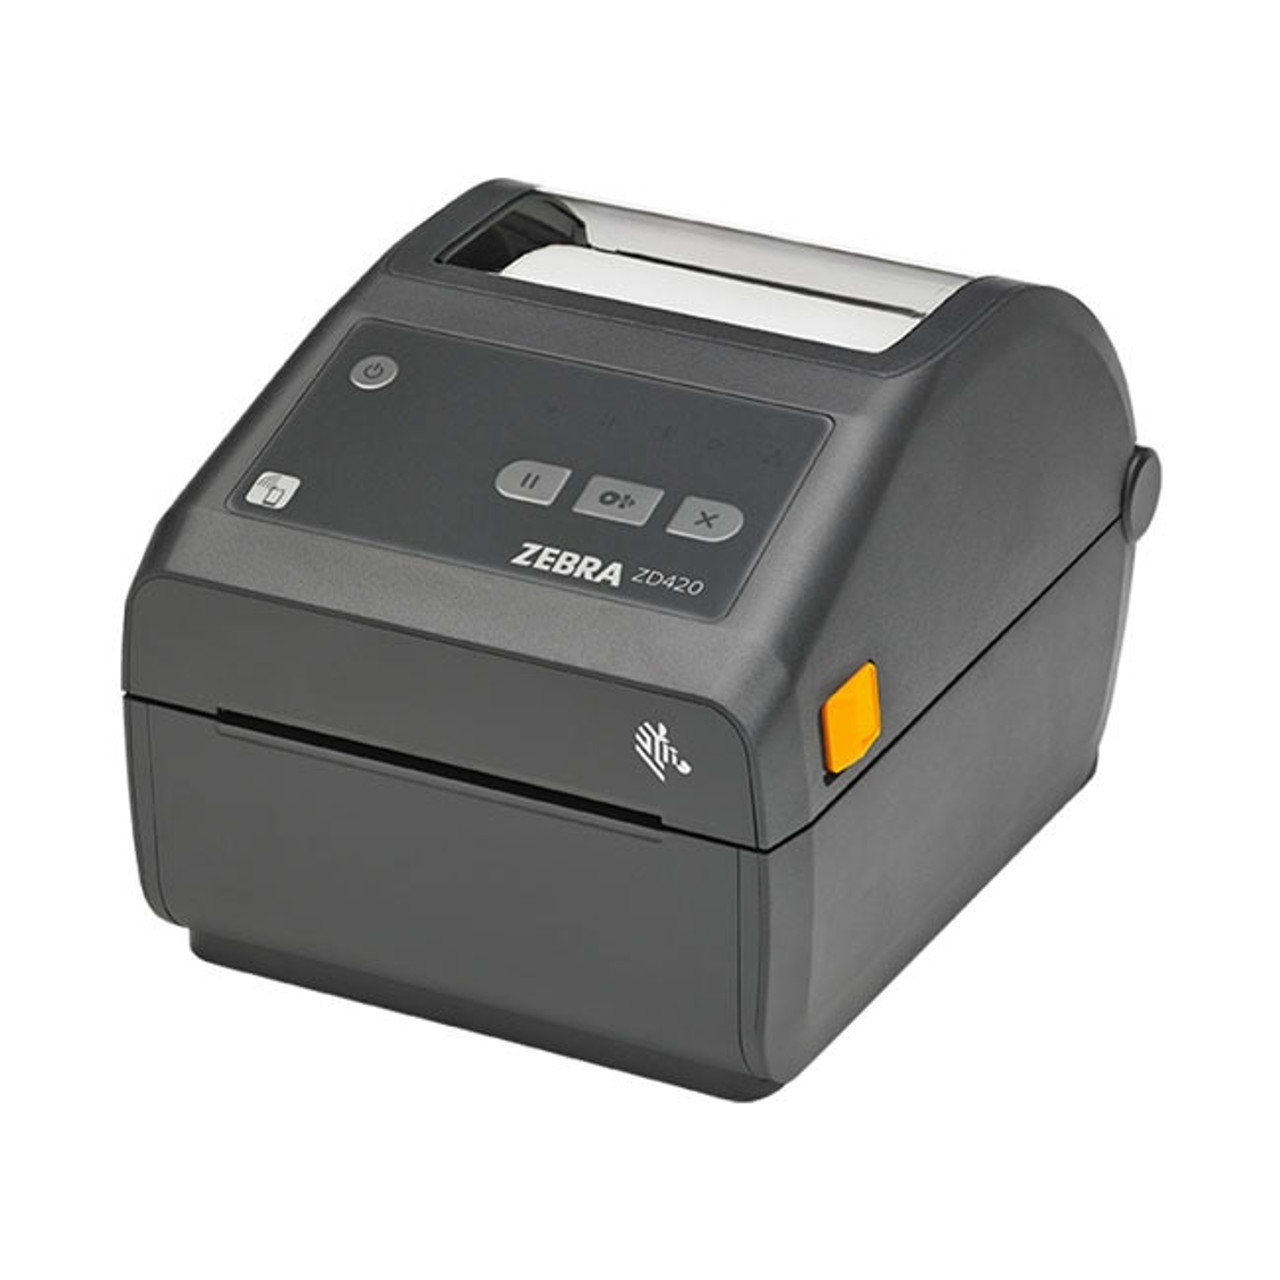 Zebra Zd420 Direct Thermal Desktop Printer Label Printers Australia 0029